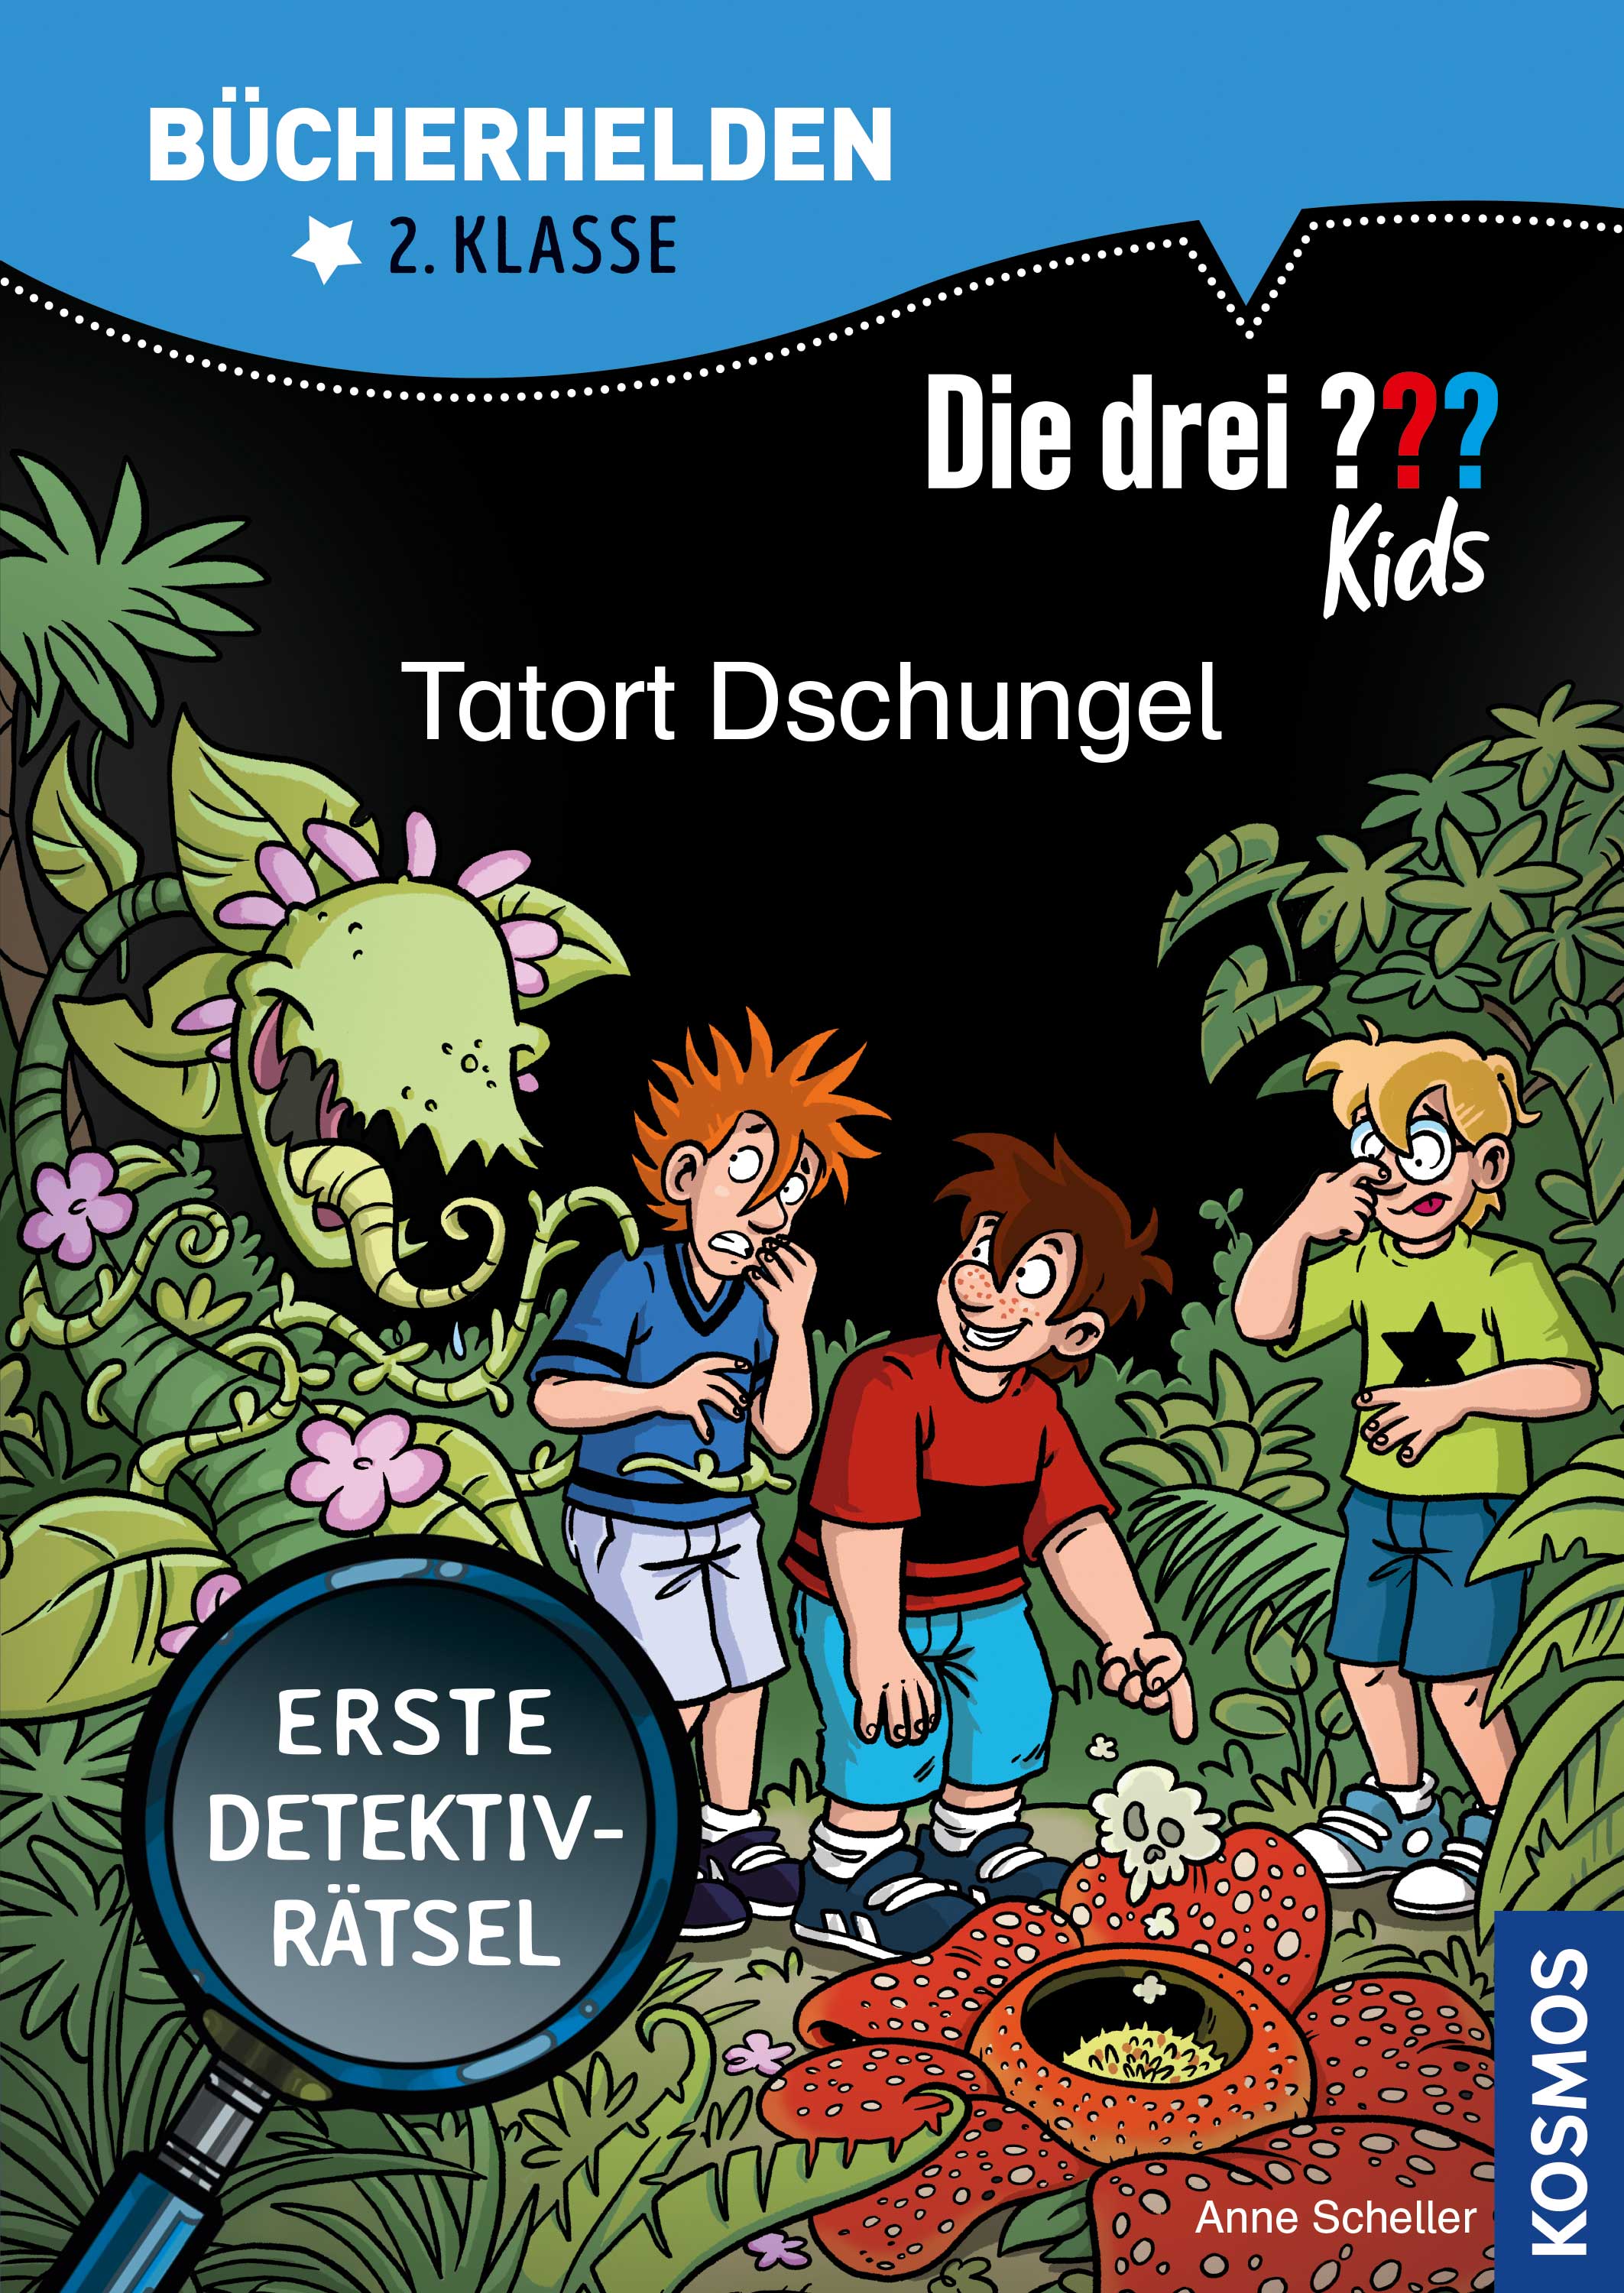 Die Drei ??? (Fragezeichen) Kids, Buch-Special: Tatort Dschungel (Bücherhelden 2. Klasse) 